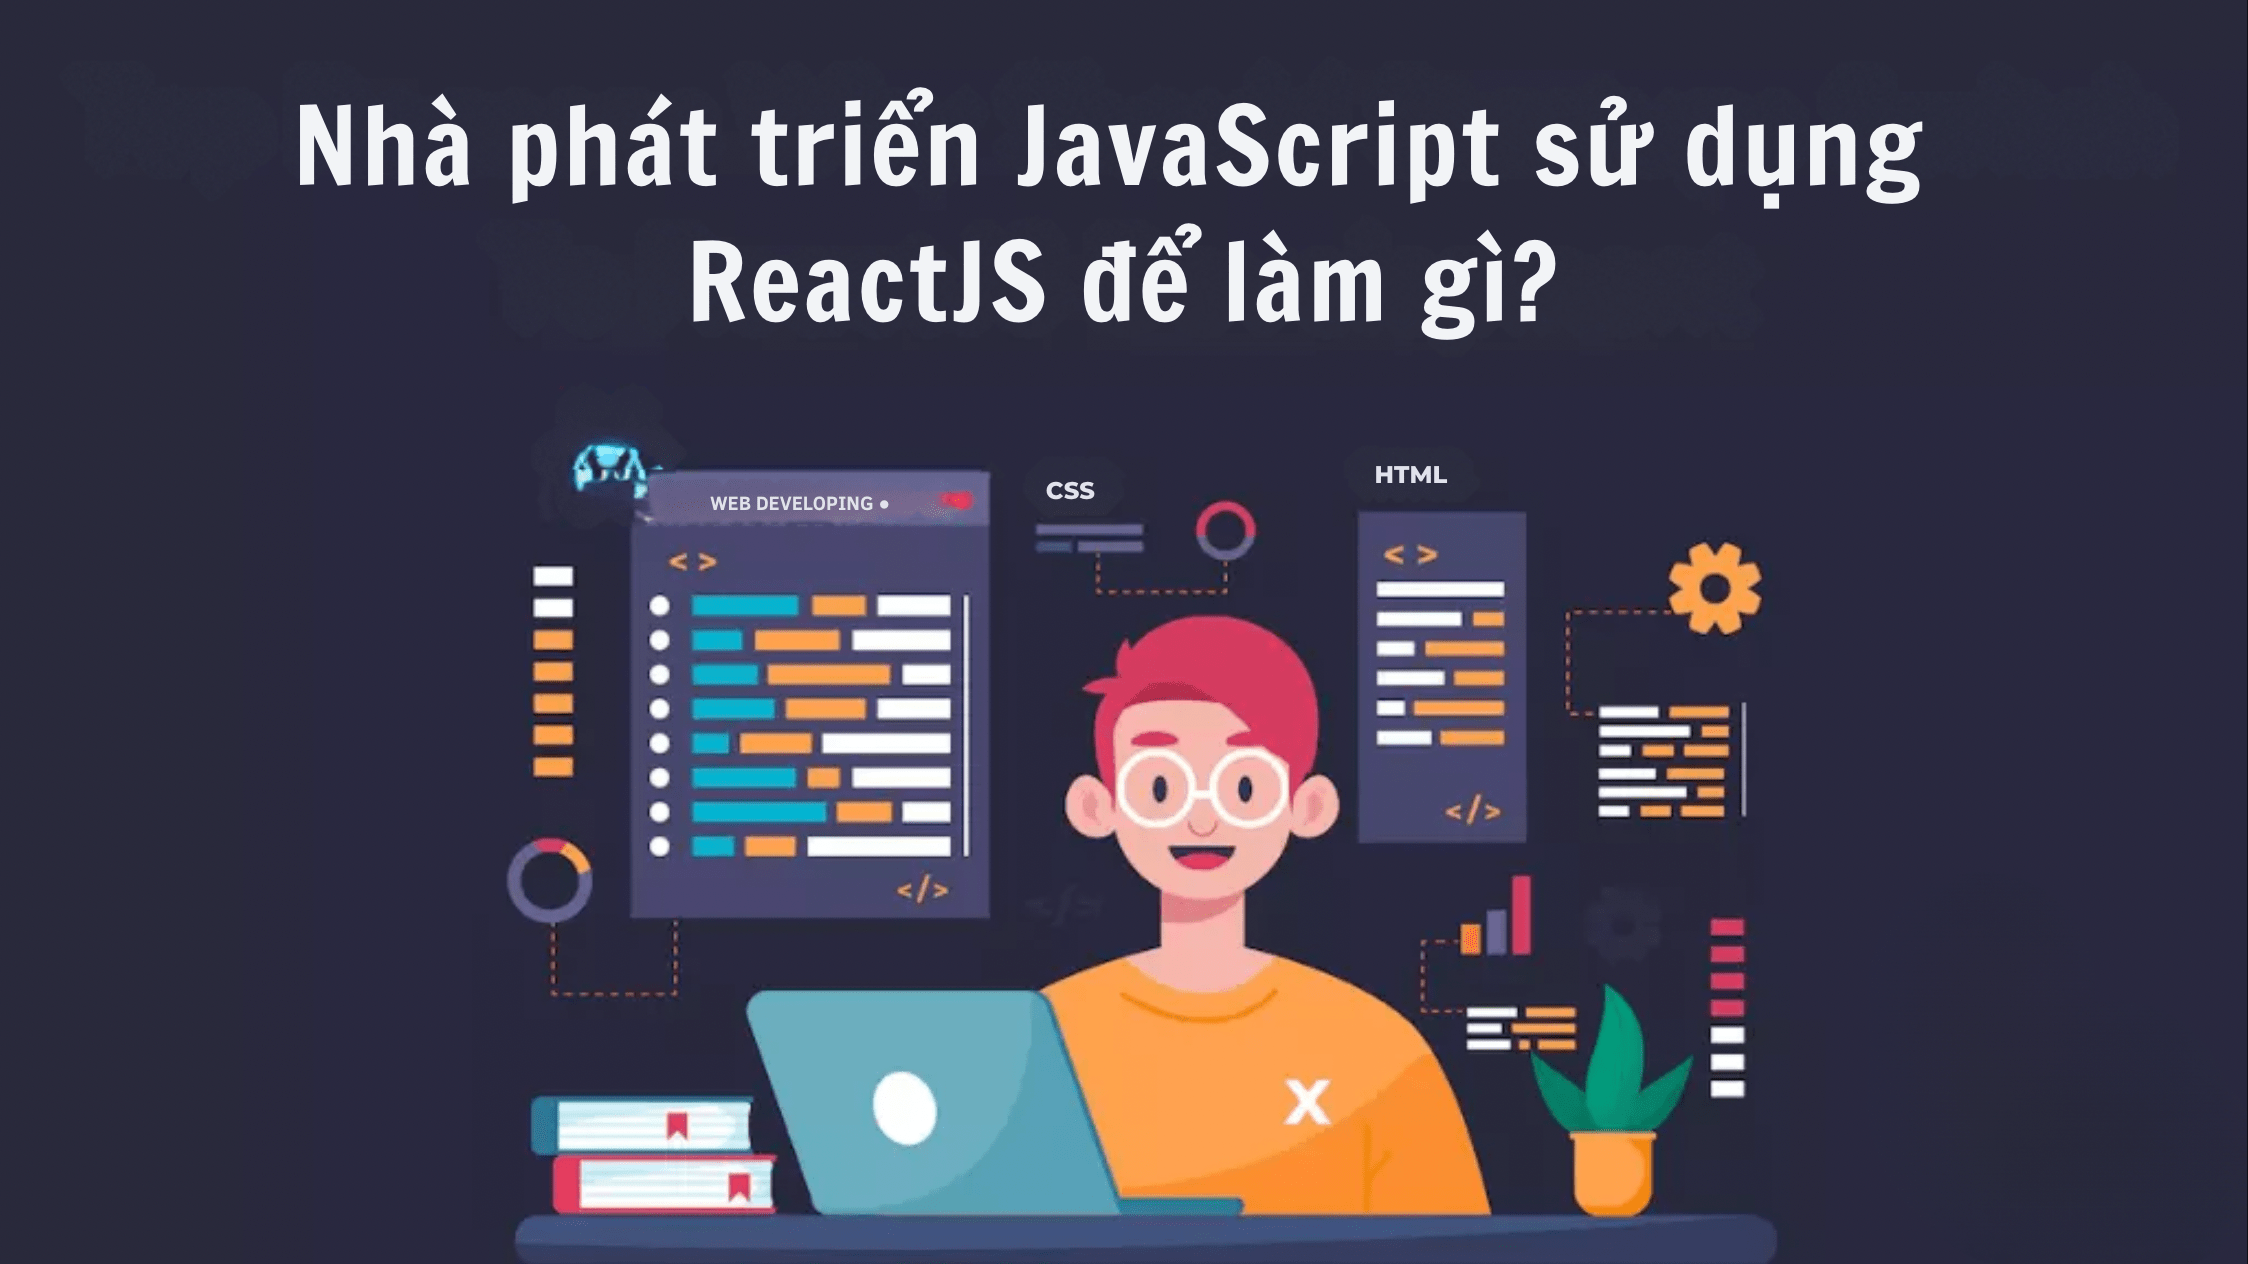 Nhà phát triển JavaScript sử dụng ReactJS để làm gì?